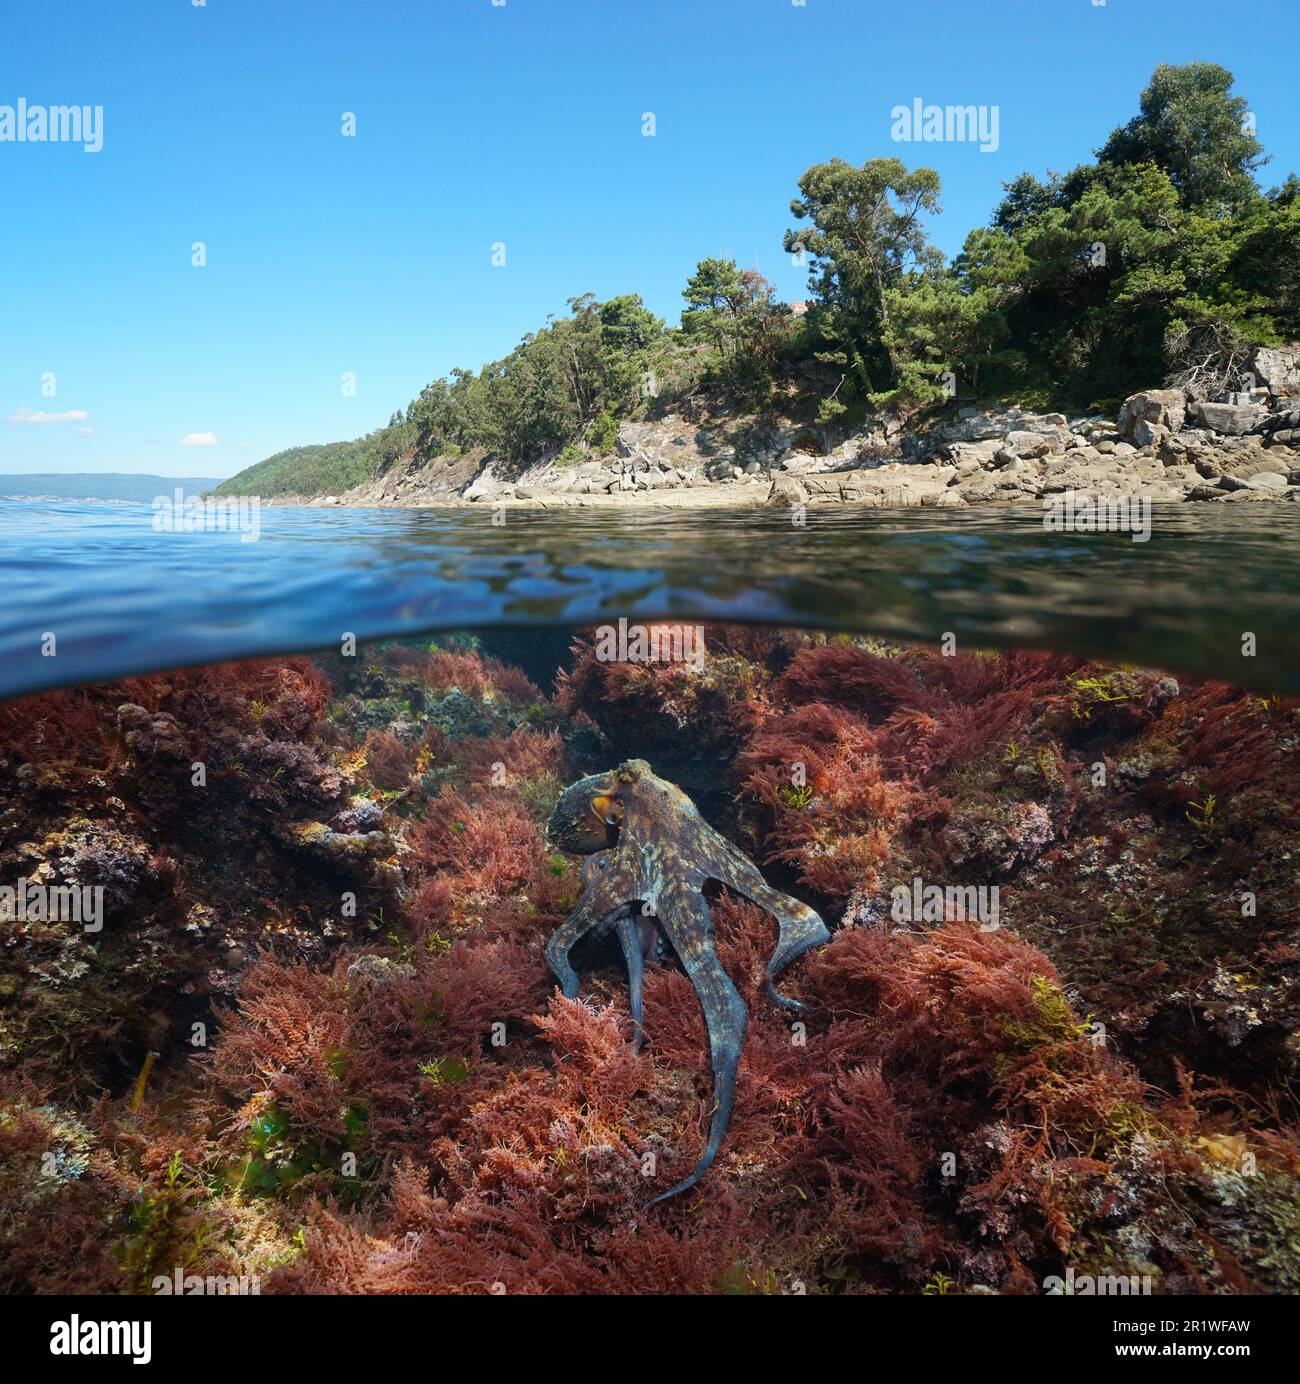 Atlantikküste mit einem Tintenfisch und Rotalgen unter Wasser im Ozean, geteilter Blick über und unter der Wasseroberfläche, Spanien, Galicien, Rias Baixas Stockfoto